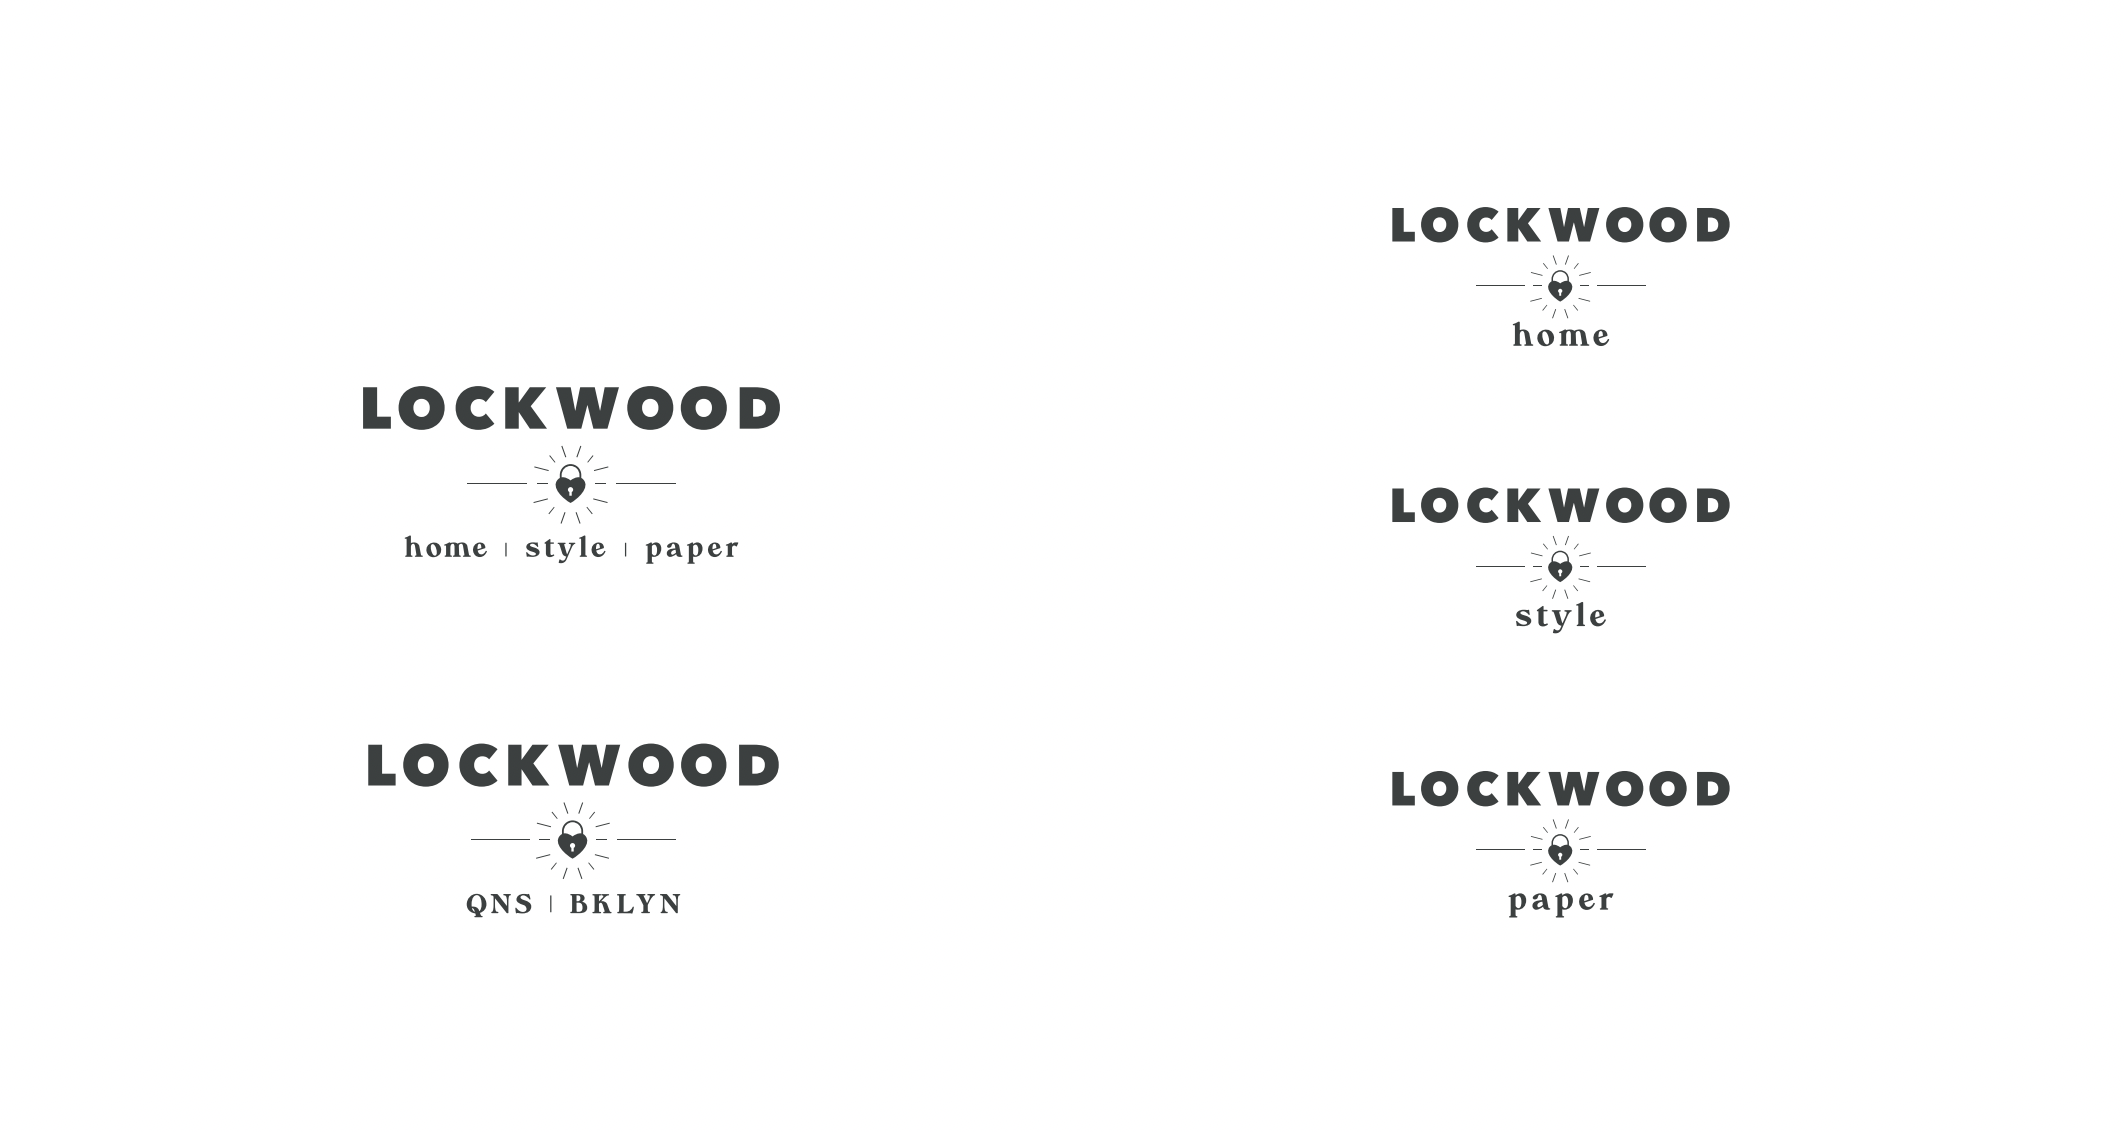 Lockwood logos